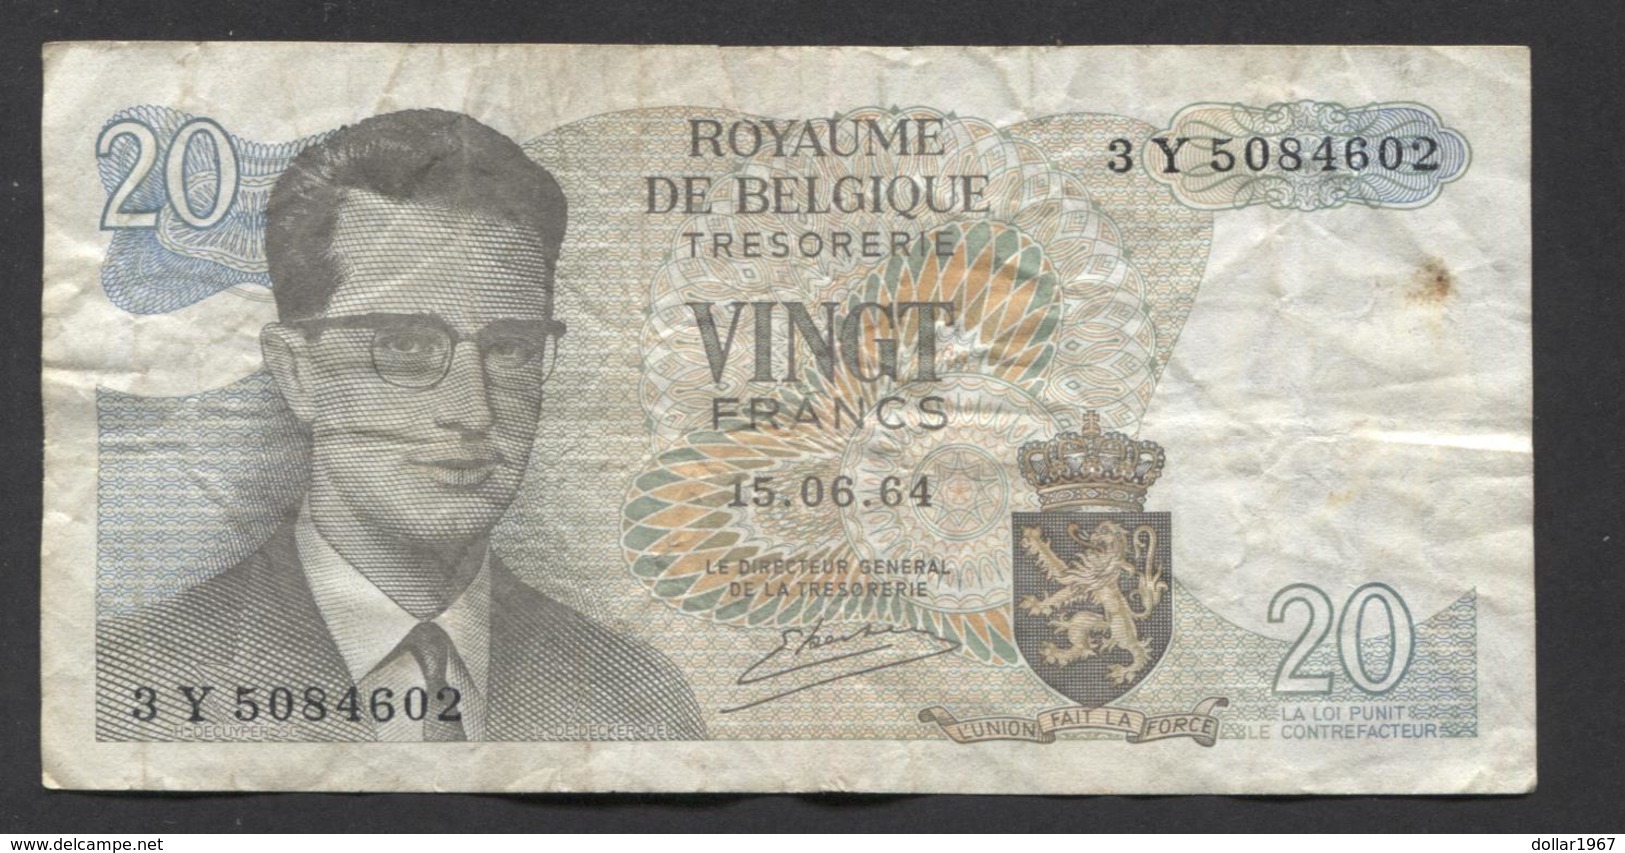 België Belgique Belgium 15 06 1964 -  20 Francs Atomium Baudouin. 3 Y  5084602 - 20 Francos